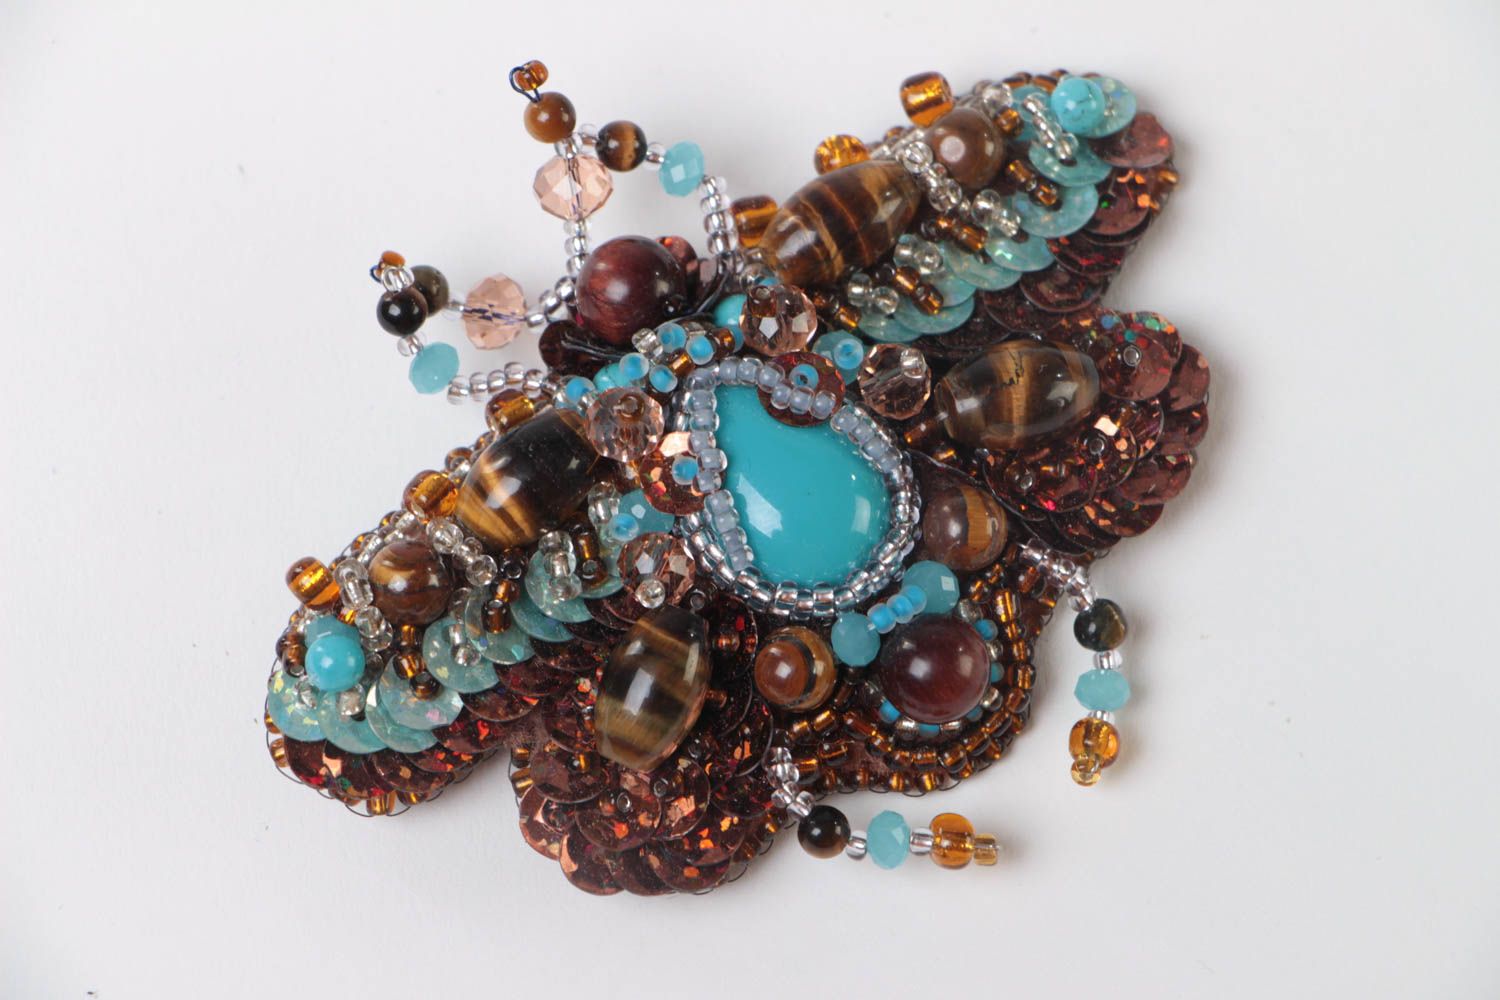 Объемная брошь с вышивкой бисером и камнями ручной работы в виде жука голубая фото 2